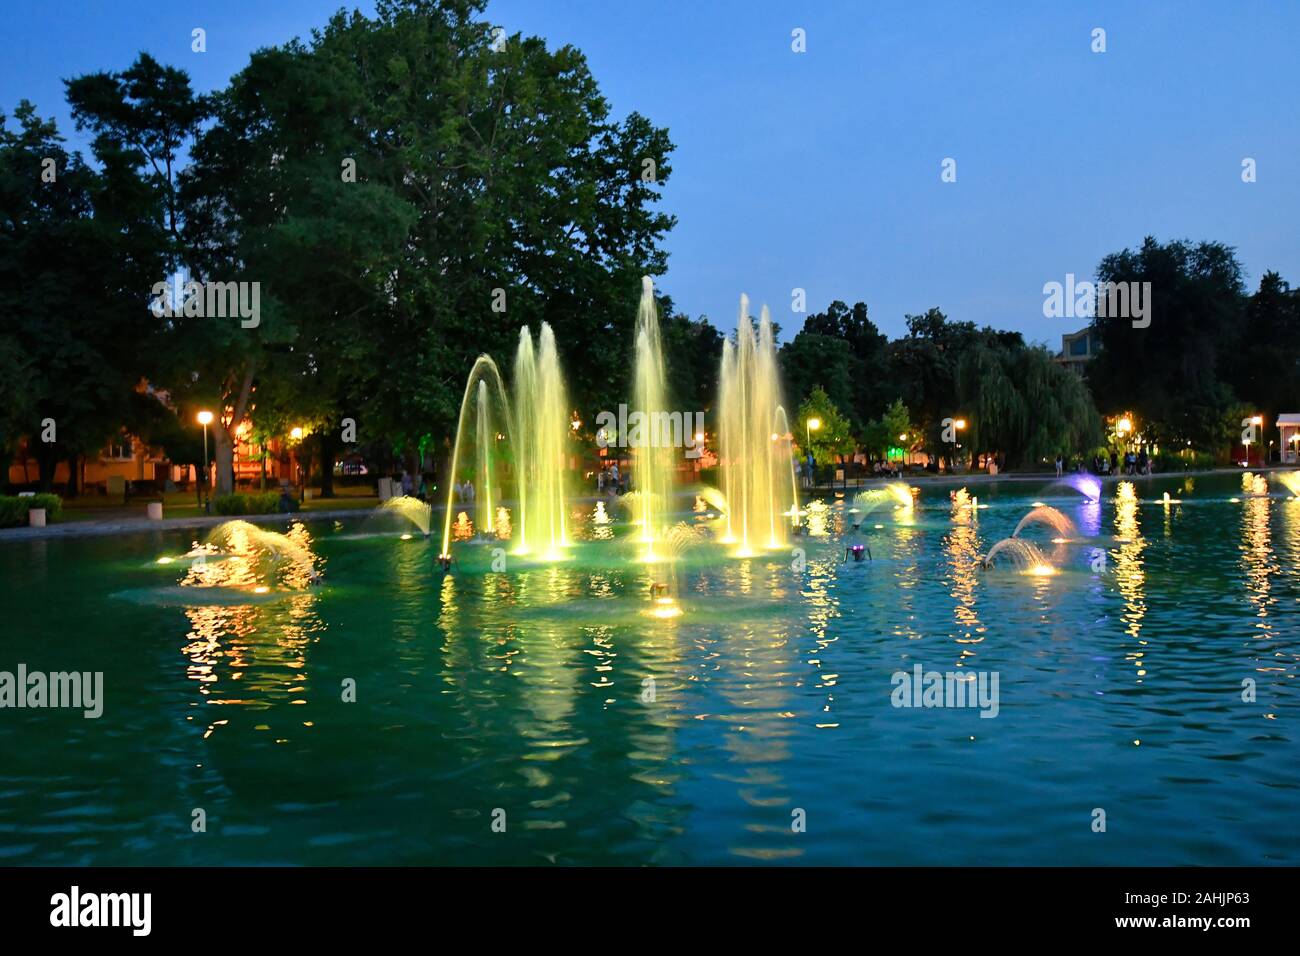 Bulgaria, illuminated fountains on evening in Tsar Simeons Garden, Stock Photo